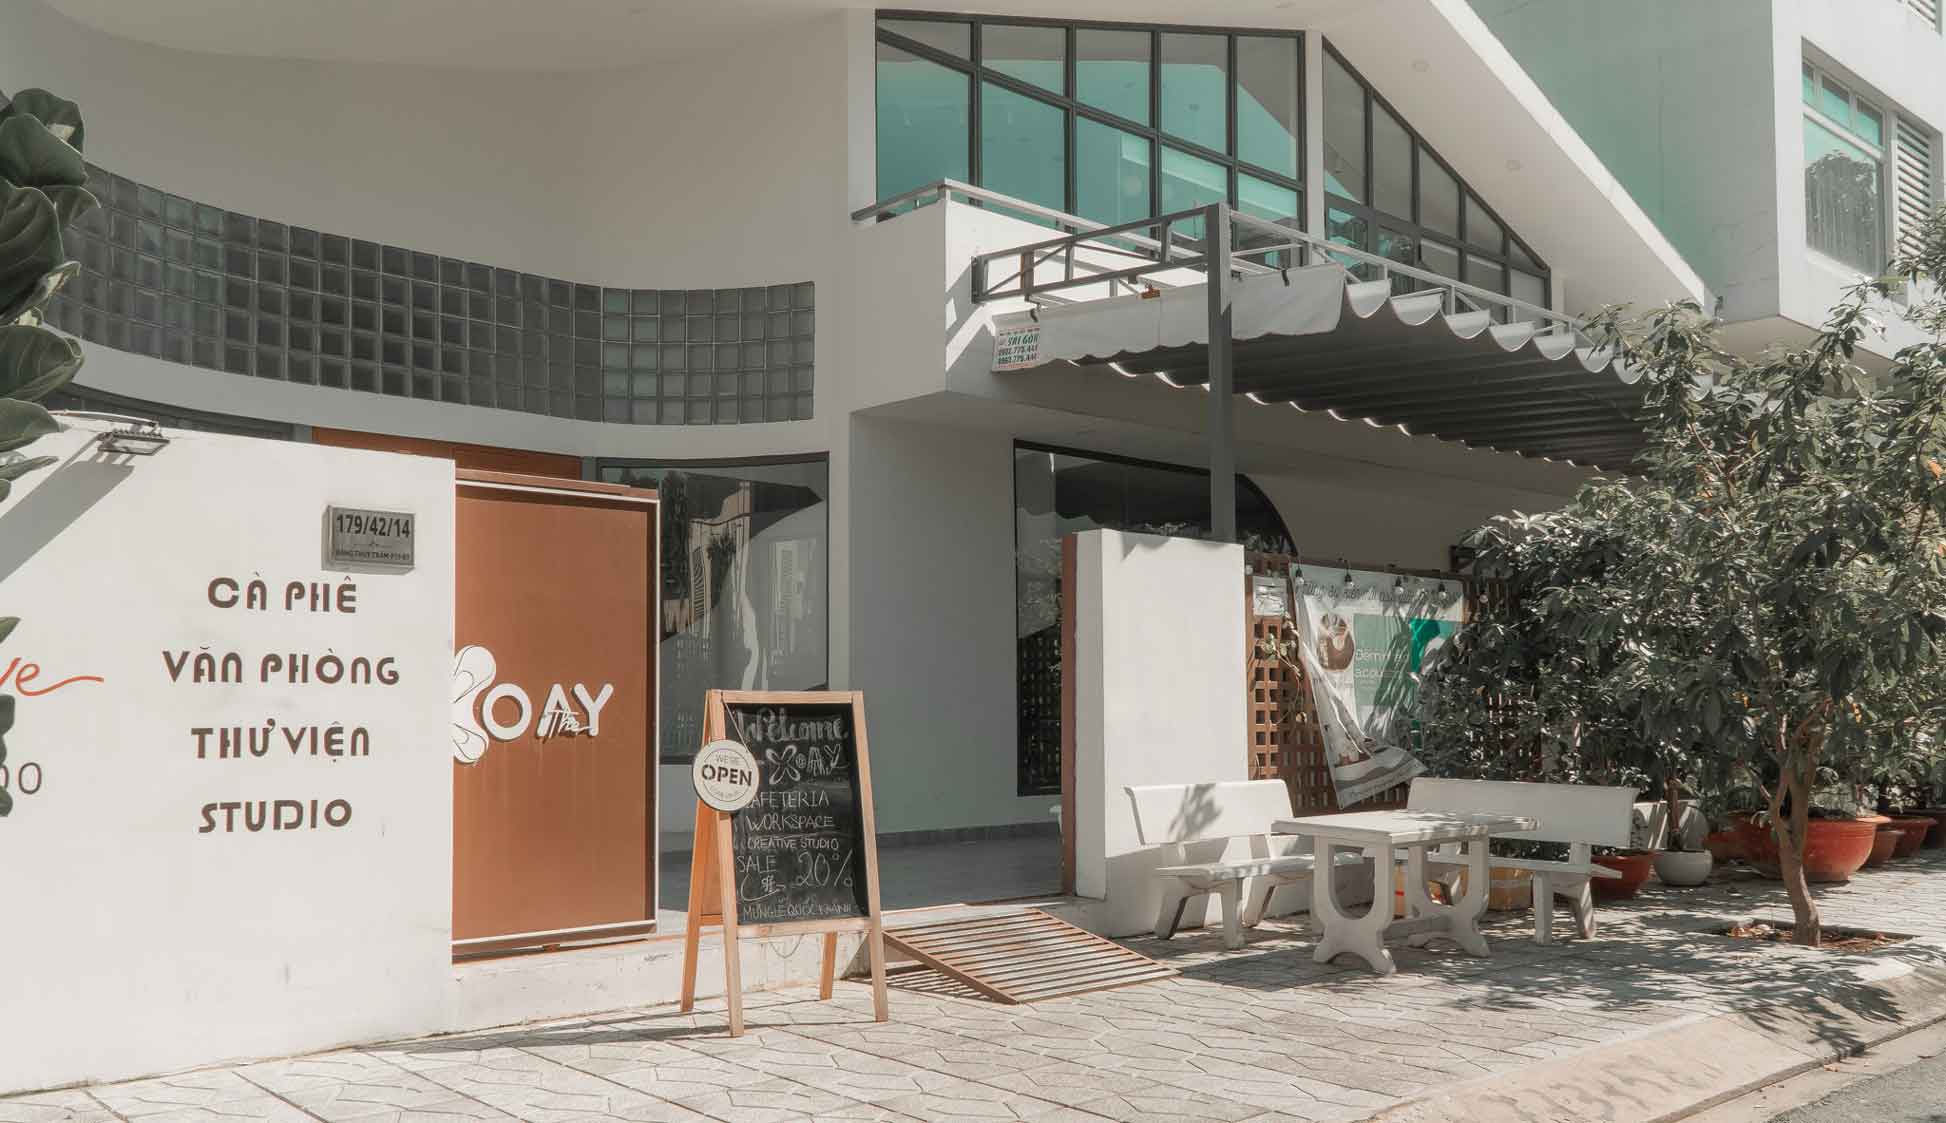 The Xoay là một trong những một quán cafe có không gian làm việc chất lượng